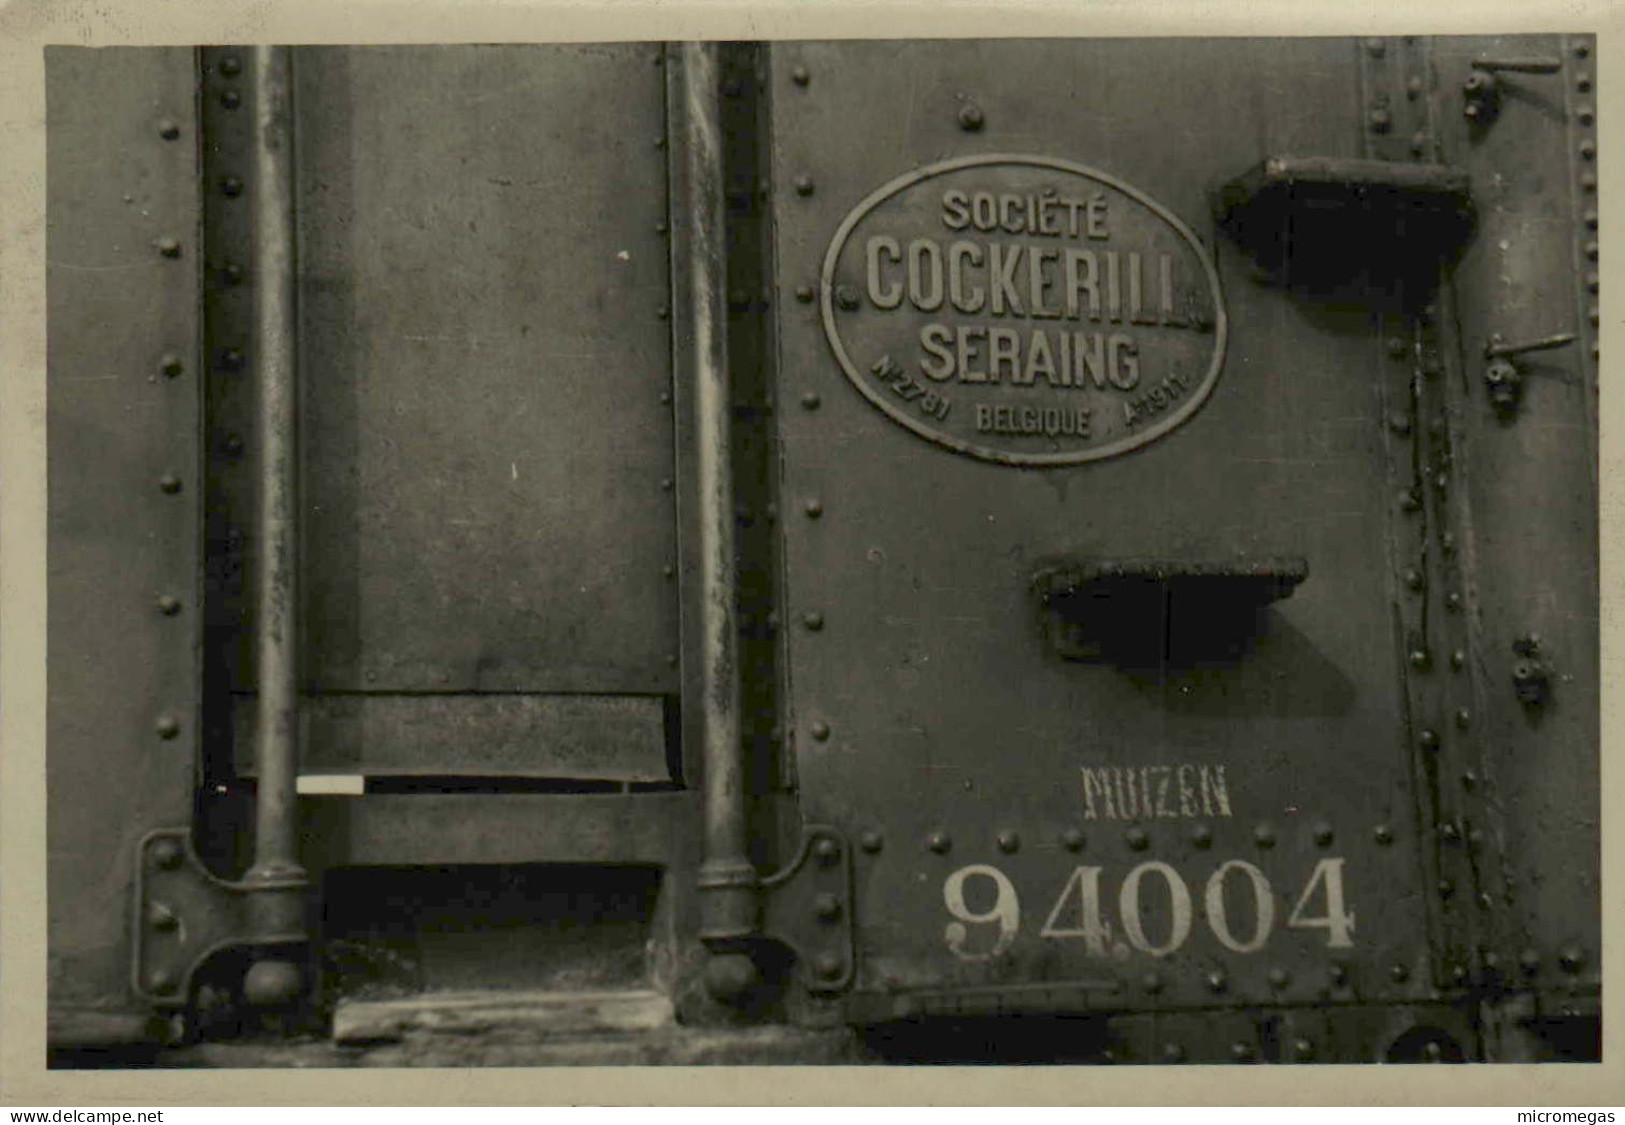 Reproduction - Société Cockerill - Seraing - Belgique - Muizen 94-004 - Trains